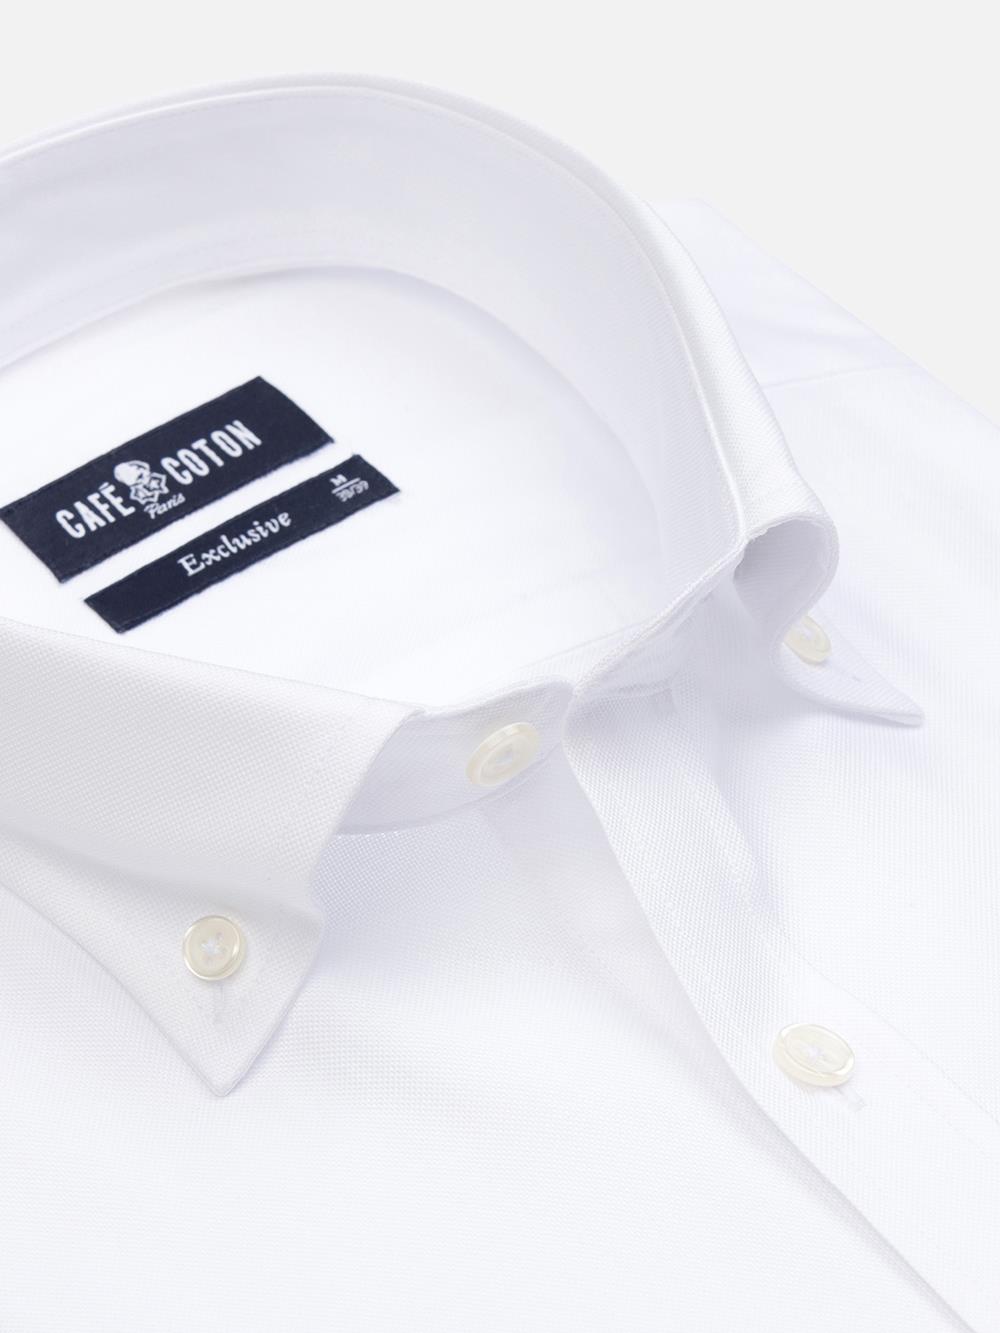 Oxfordhemd weiß - Buttondown Kragen